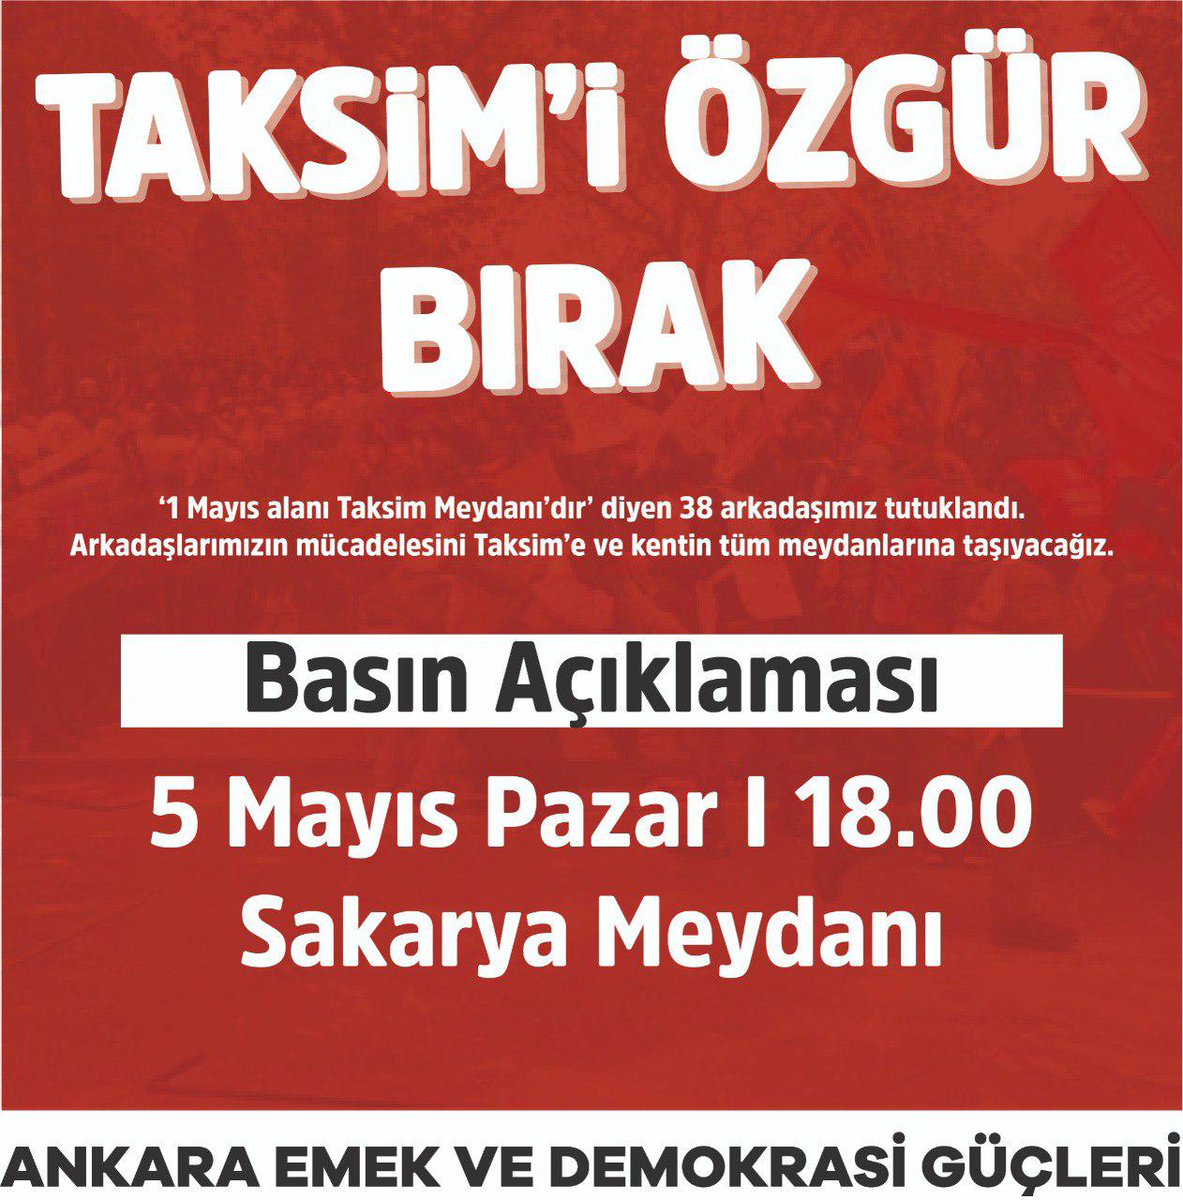 ‼️ '1 Mayıs alanı Taksim Meydanı'dır' diyen 38 arkadaşımız, mücadele dostlarımız tutuklandı. Ev baskınları ve gözaltılar devam ediyor. Emekçilere çekilen barikatlar, baskılar sökmeyecek! 📣 'Taksim iradesi gaspedilemez!' demek için bugün Sakarya Meydanında eylemdeyiz!